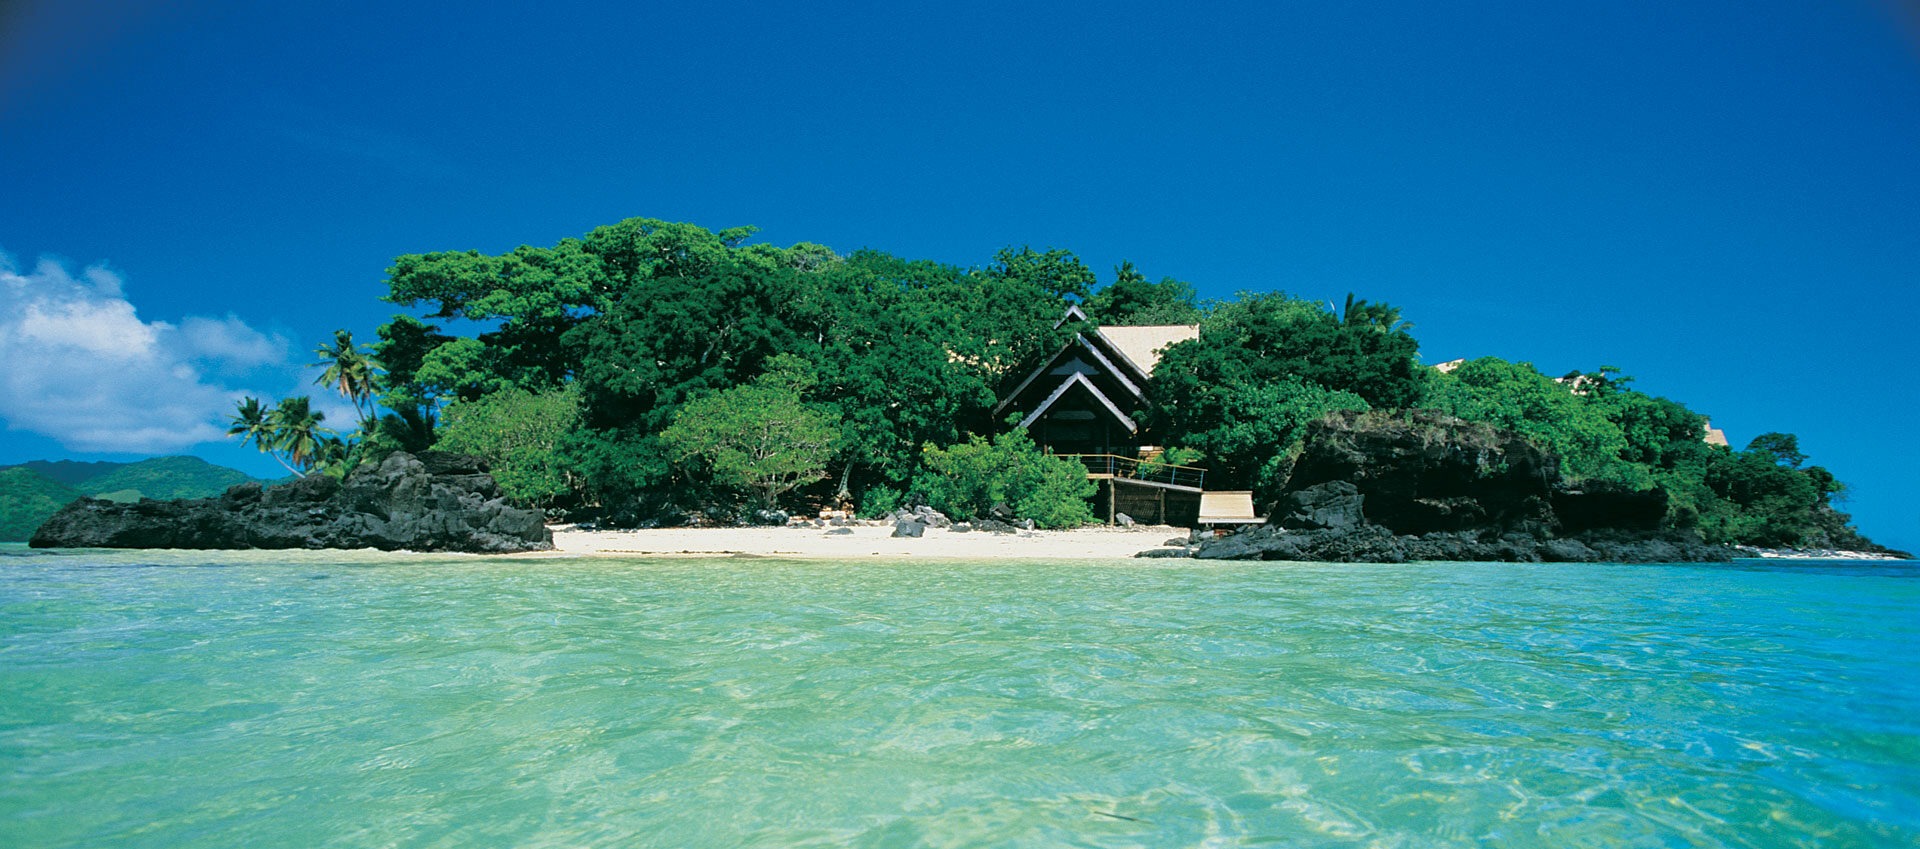 fiji private island resort